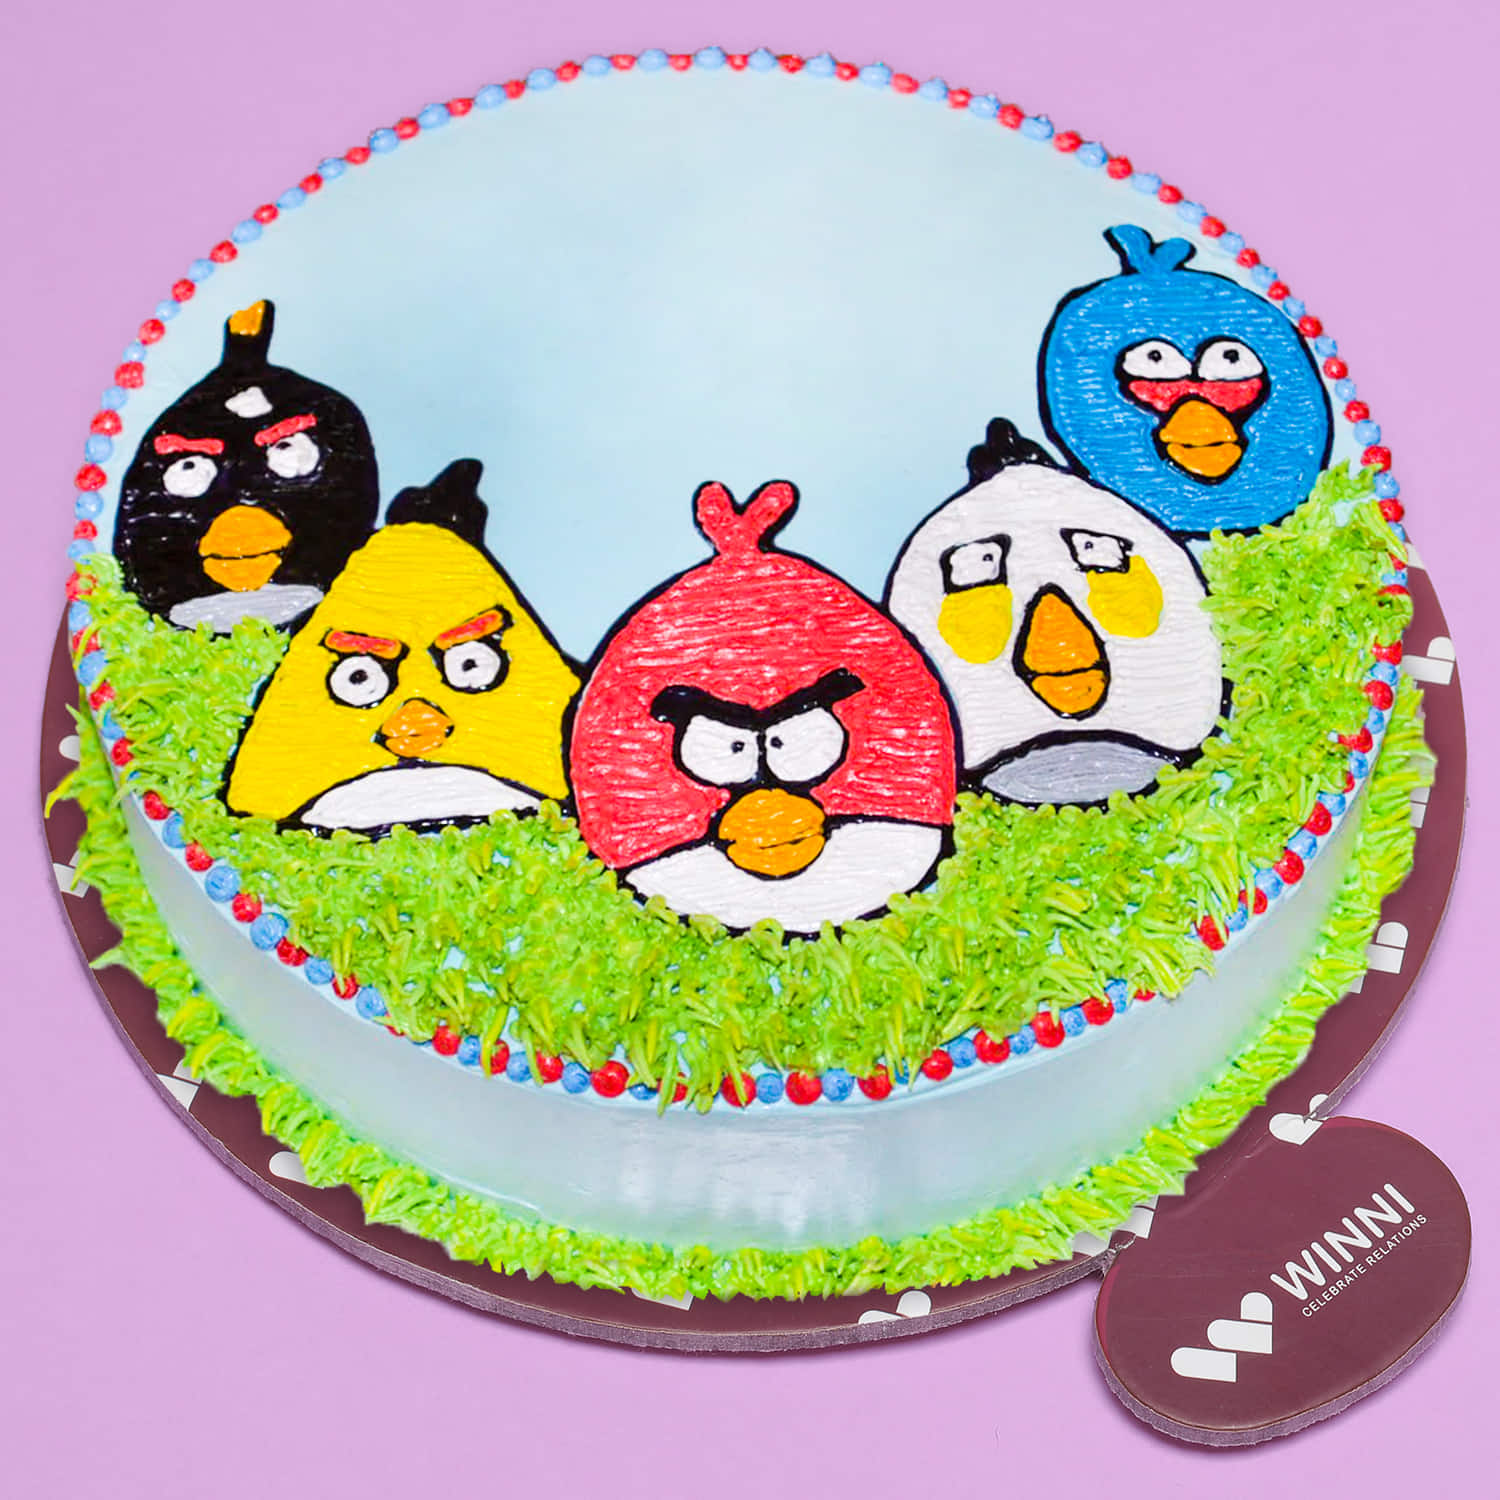 Angry Birds - Mummy C's Cake Pantry